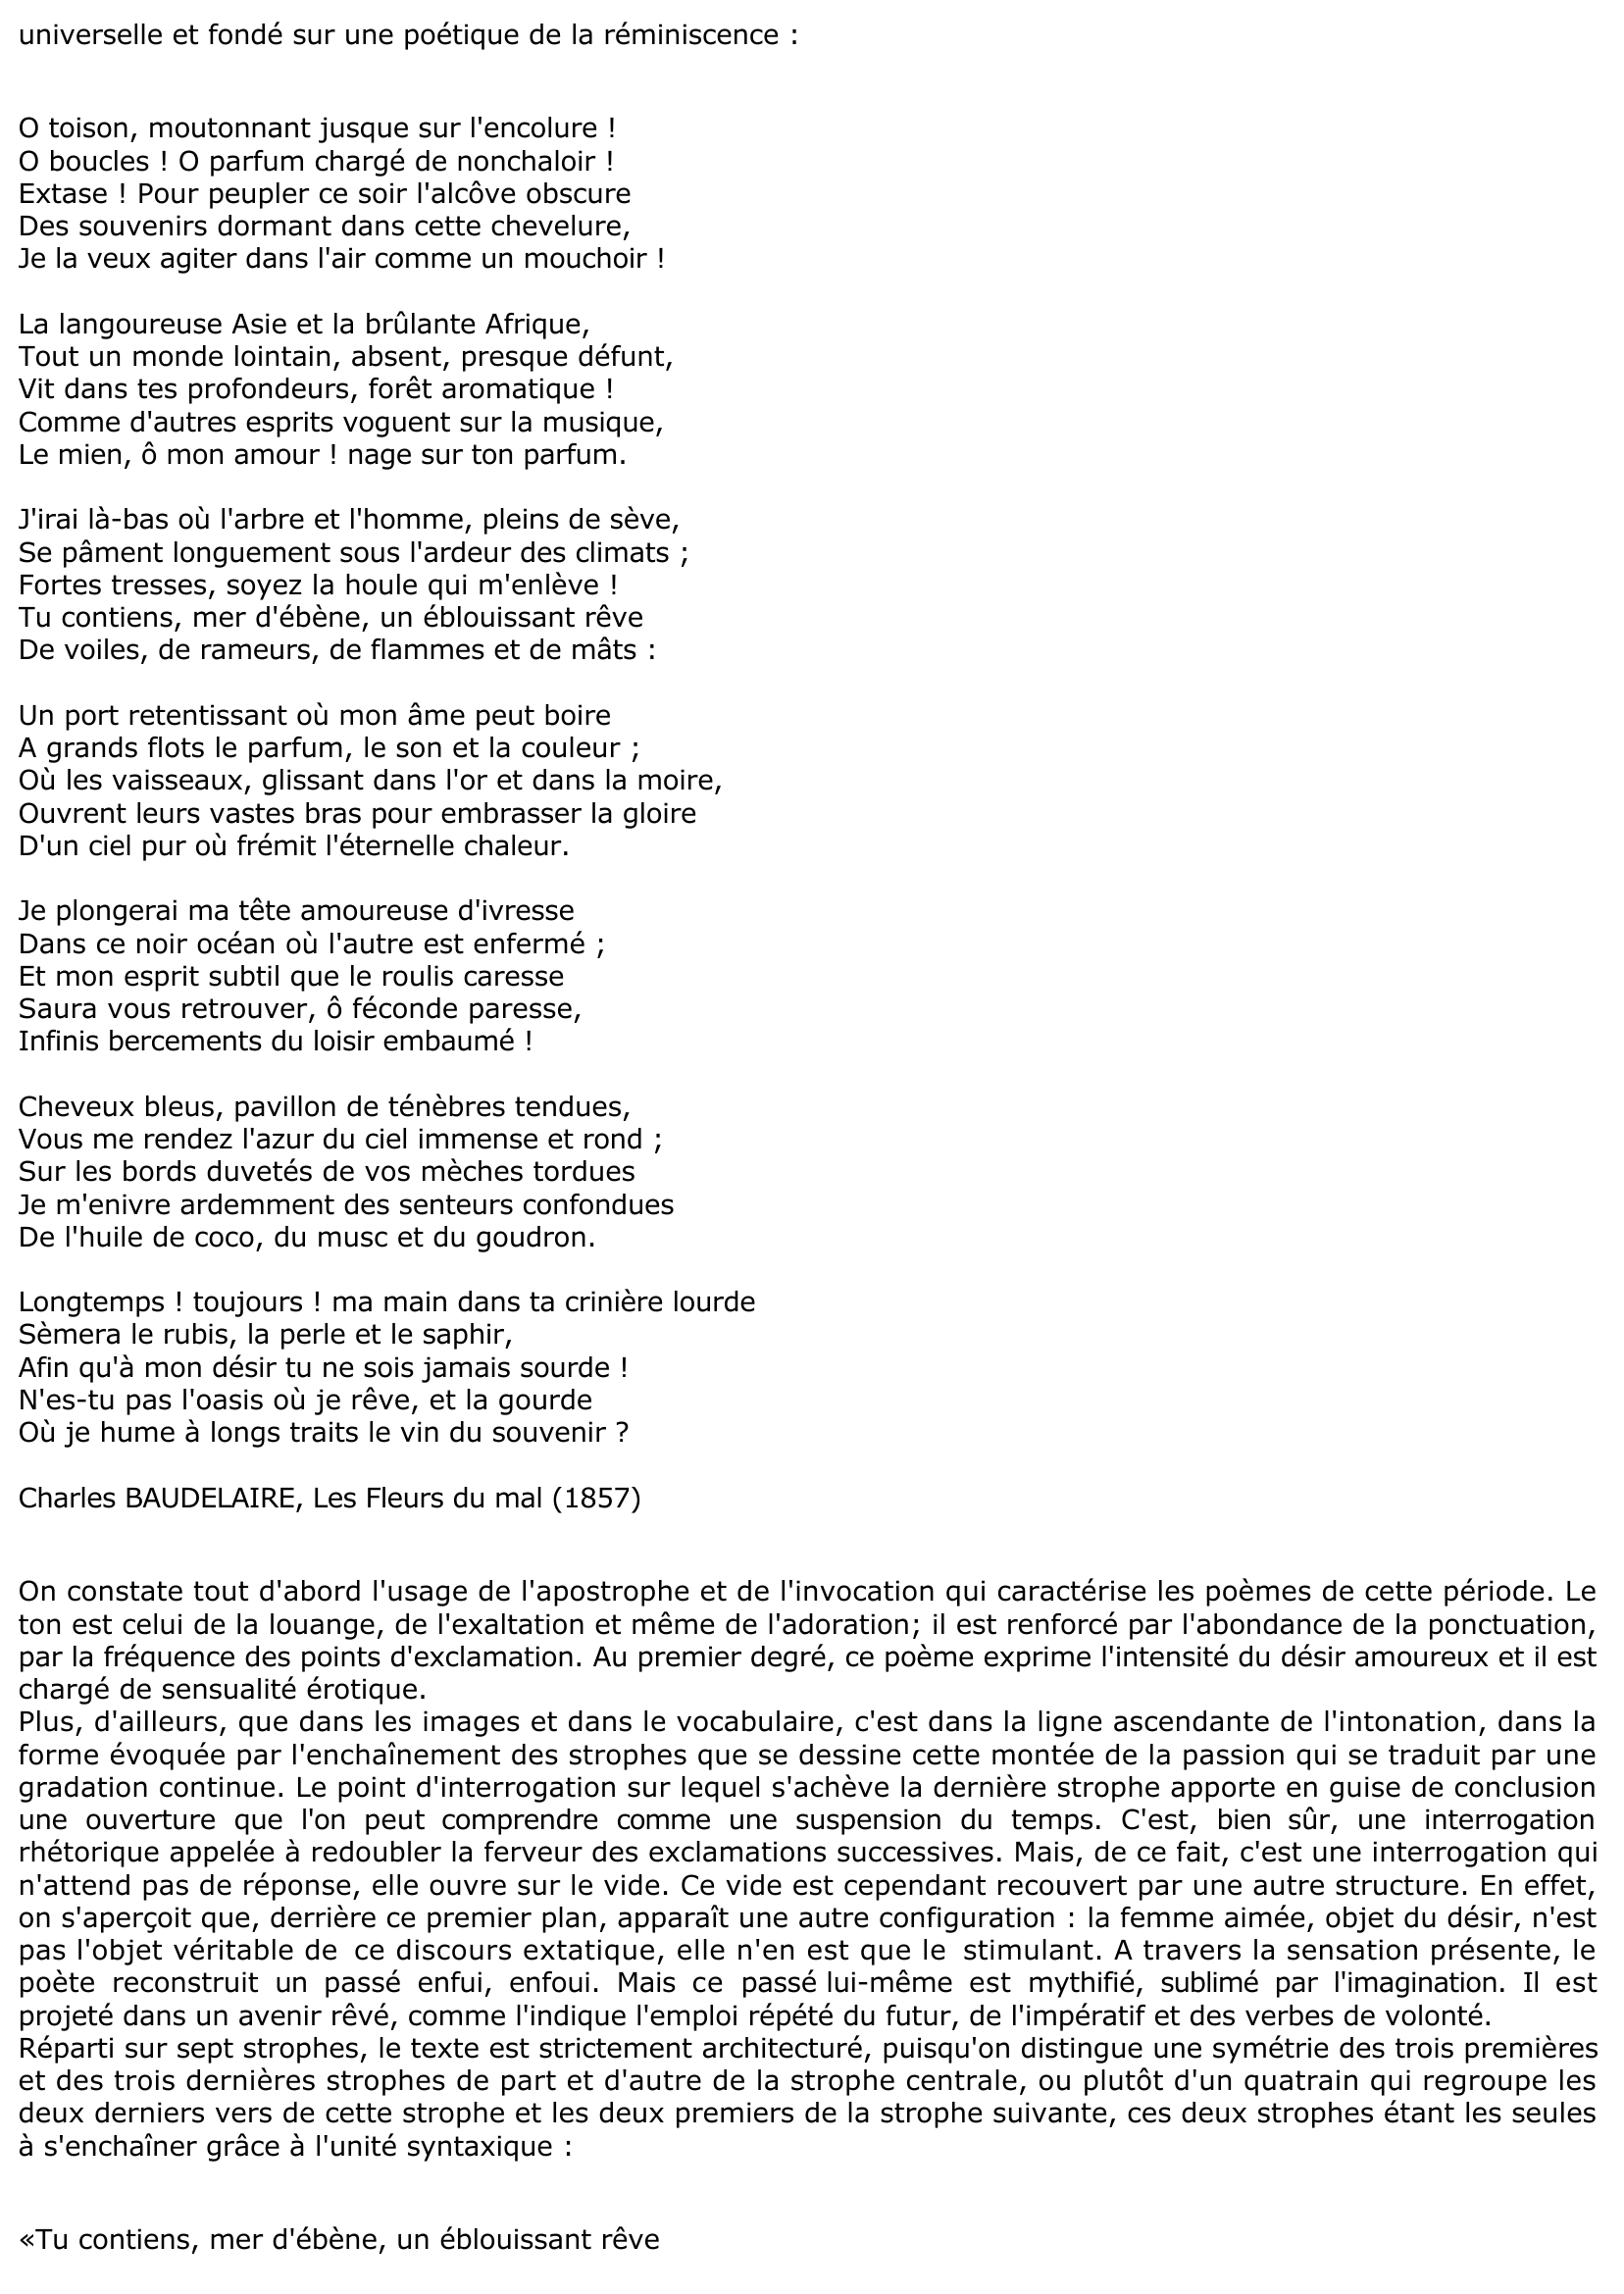 Prévisualisation du document Fiche de révision: La CHEVELURE de Baudelaire